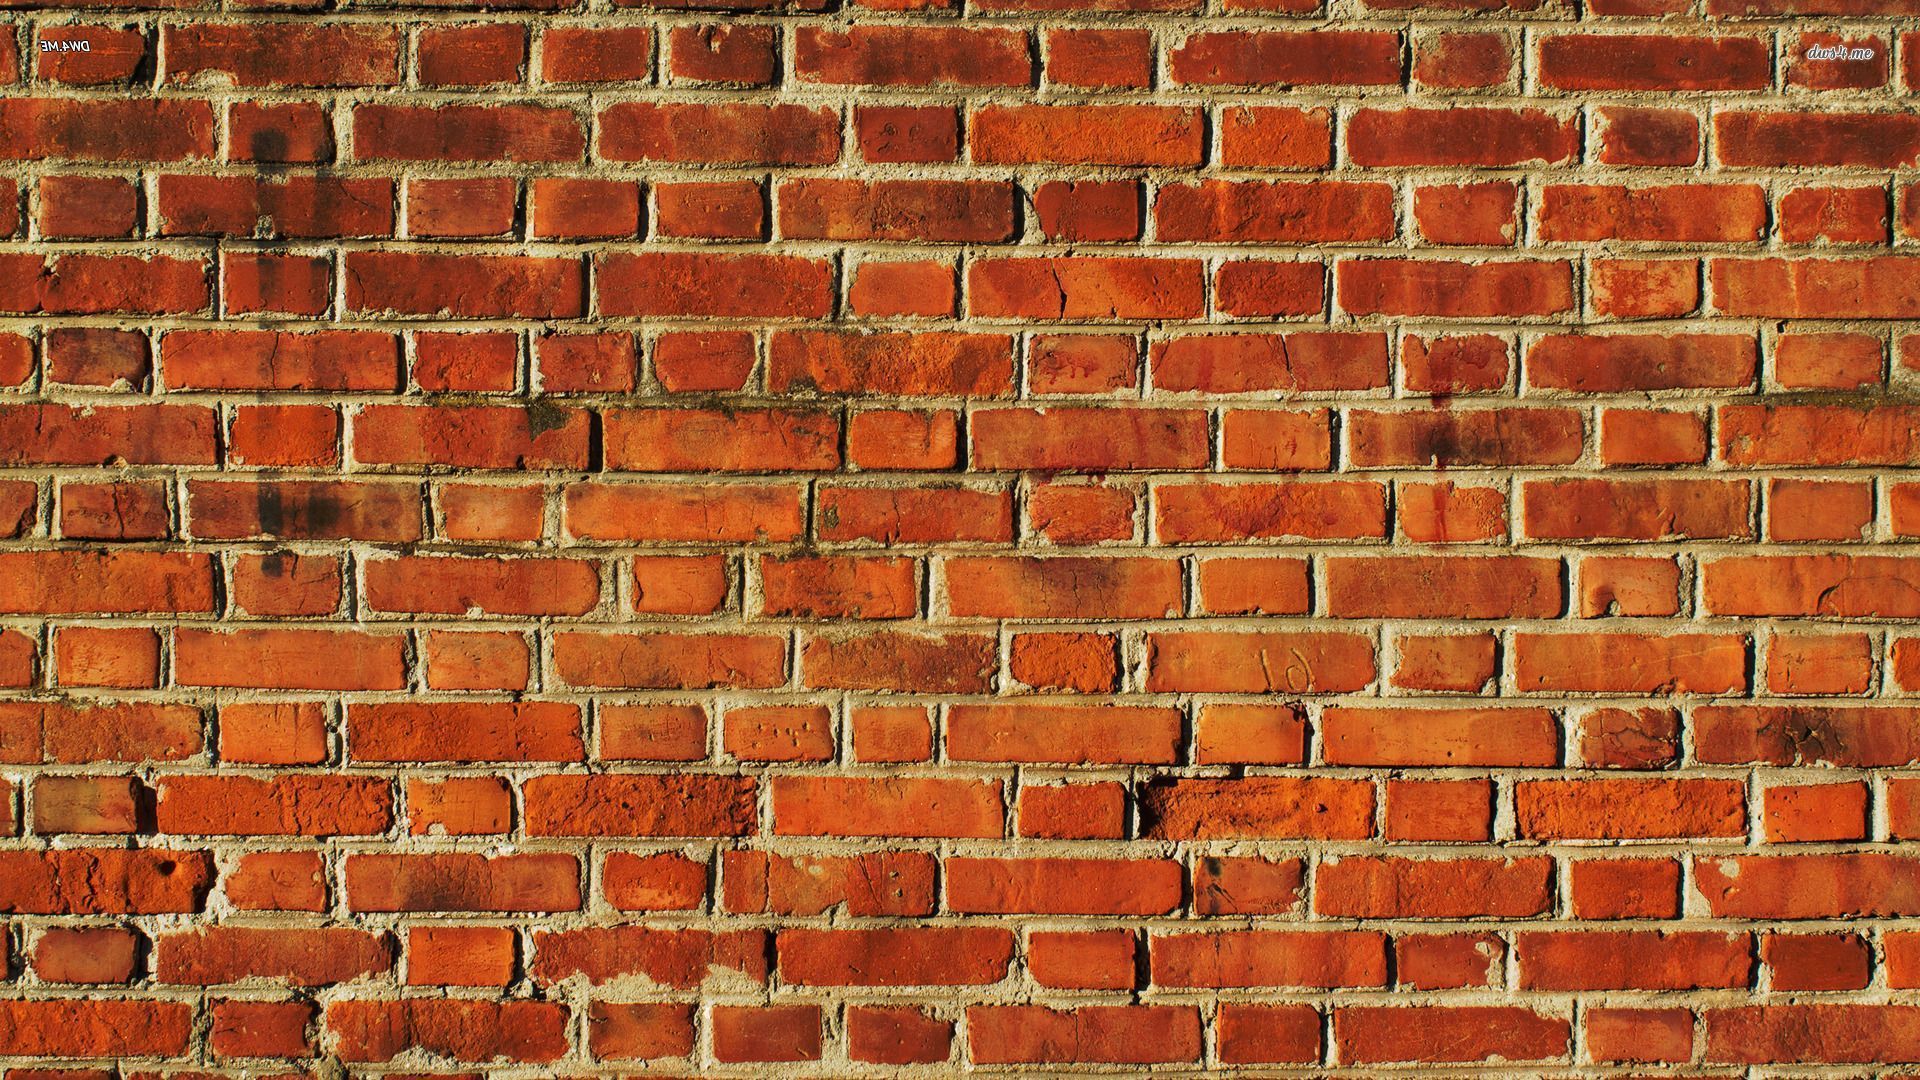 Brick wall HD wallpaper. Brick wallpaper, Brick wall wallpaper, Brick wallpaper picture